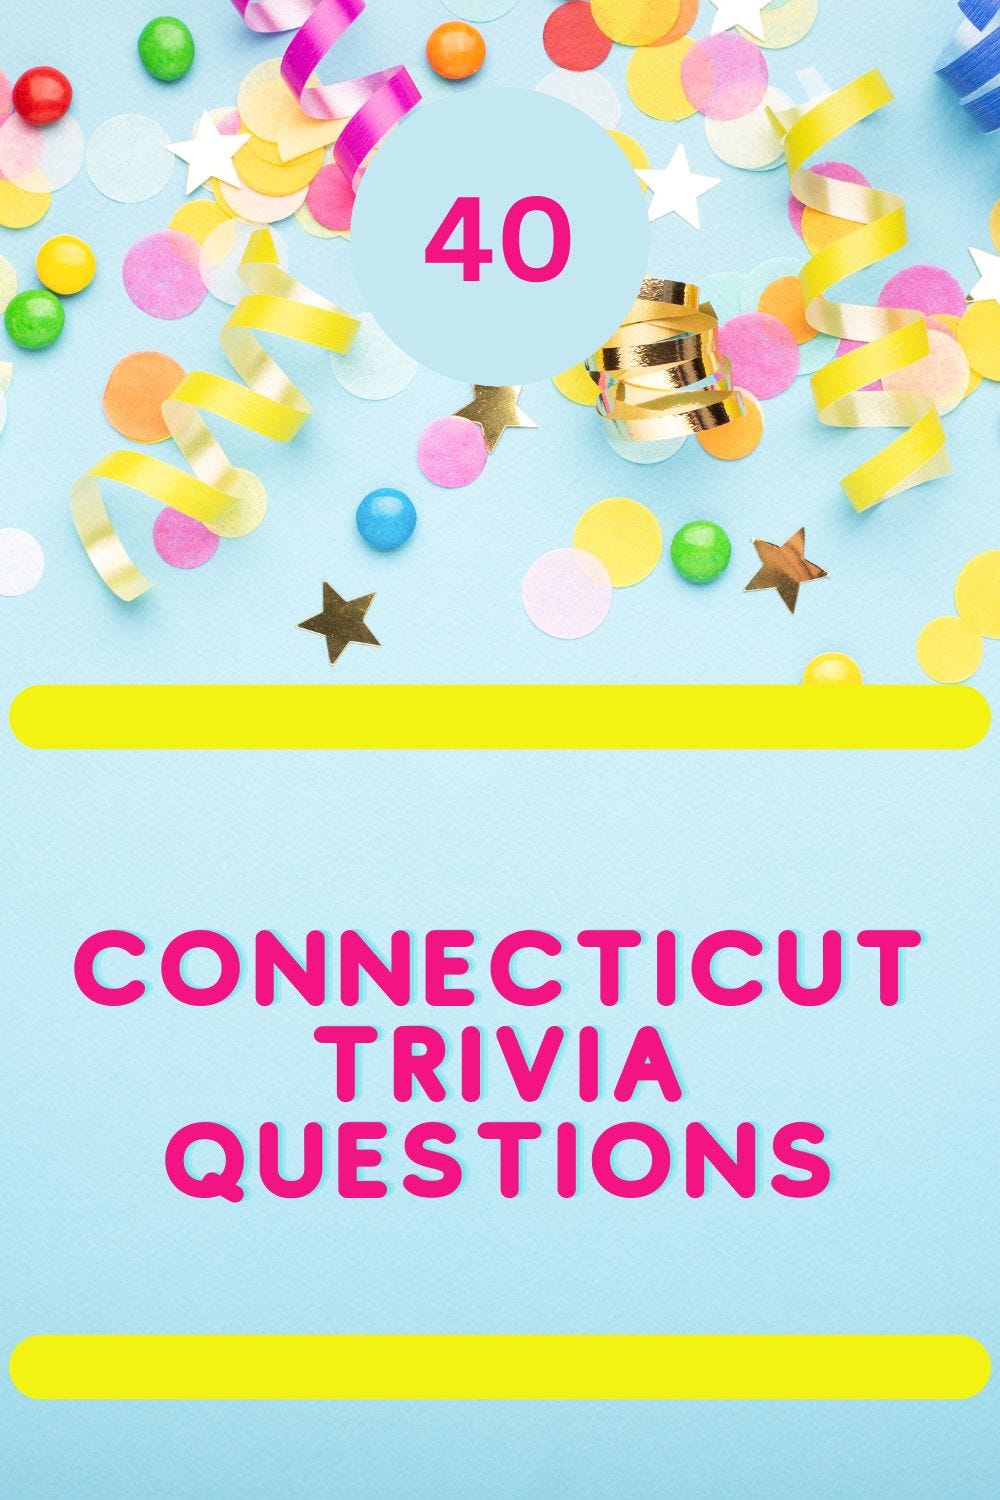 40 Connecticut Trivia Questions